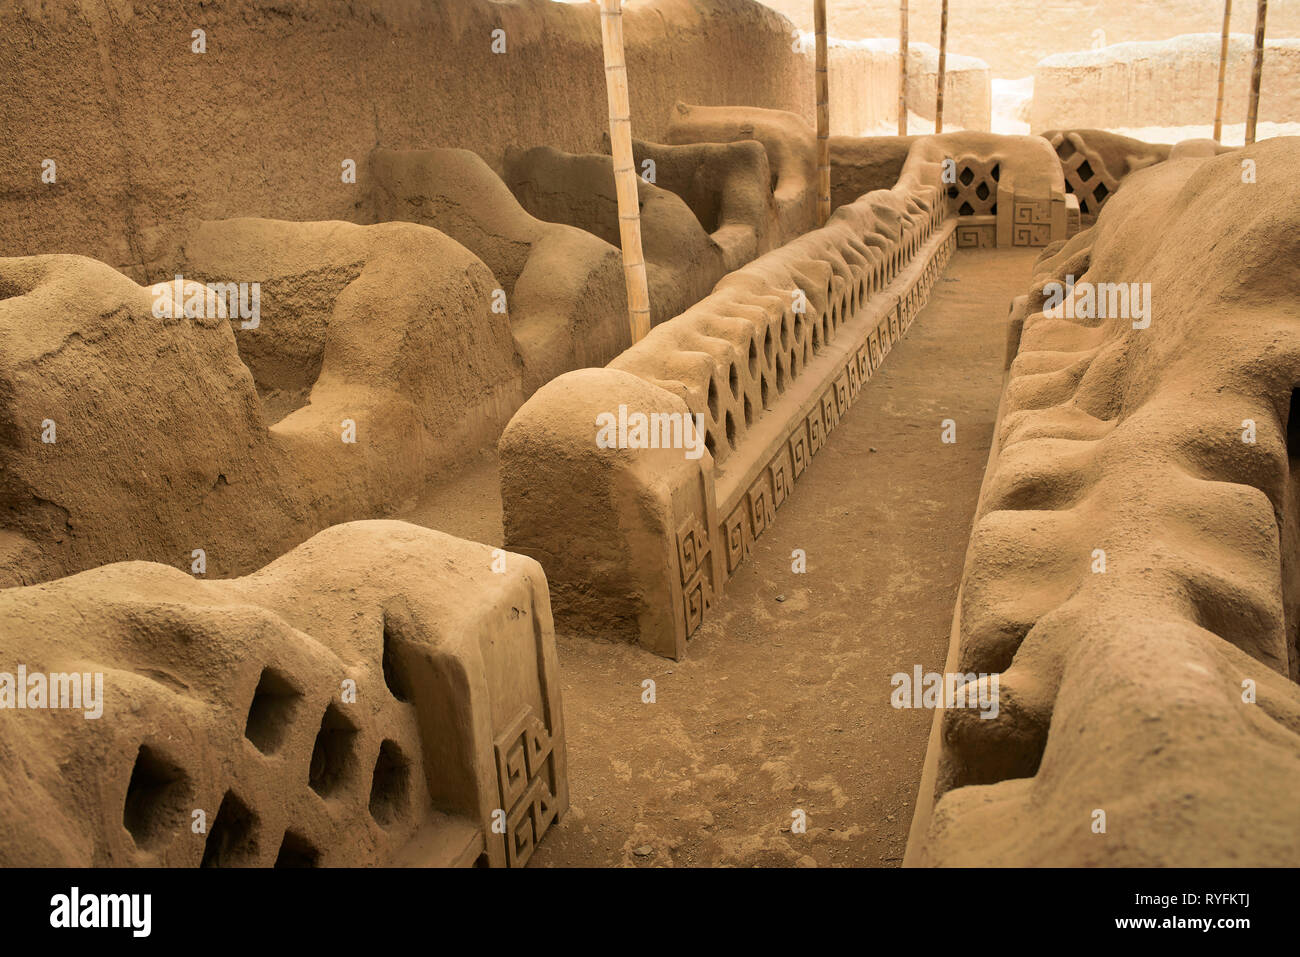 Murs en Adobe de la ville de Chan Chan, capitale de la royaume Chimú. Site archéologique de Chan Chan, du patrimoine mondial de l'Unesco. Trujillo, Pérou. Jul 2018 Banque D'Images